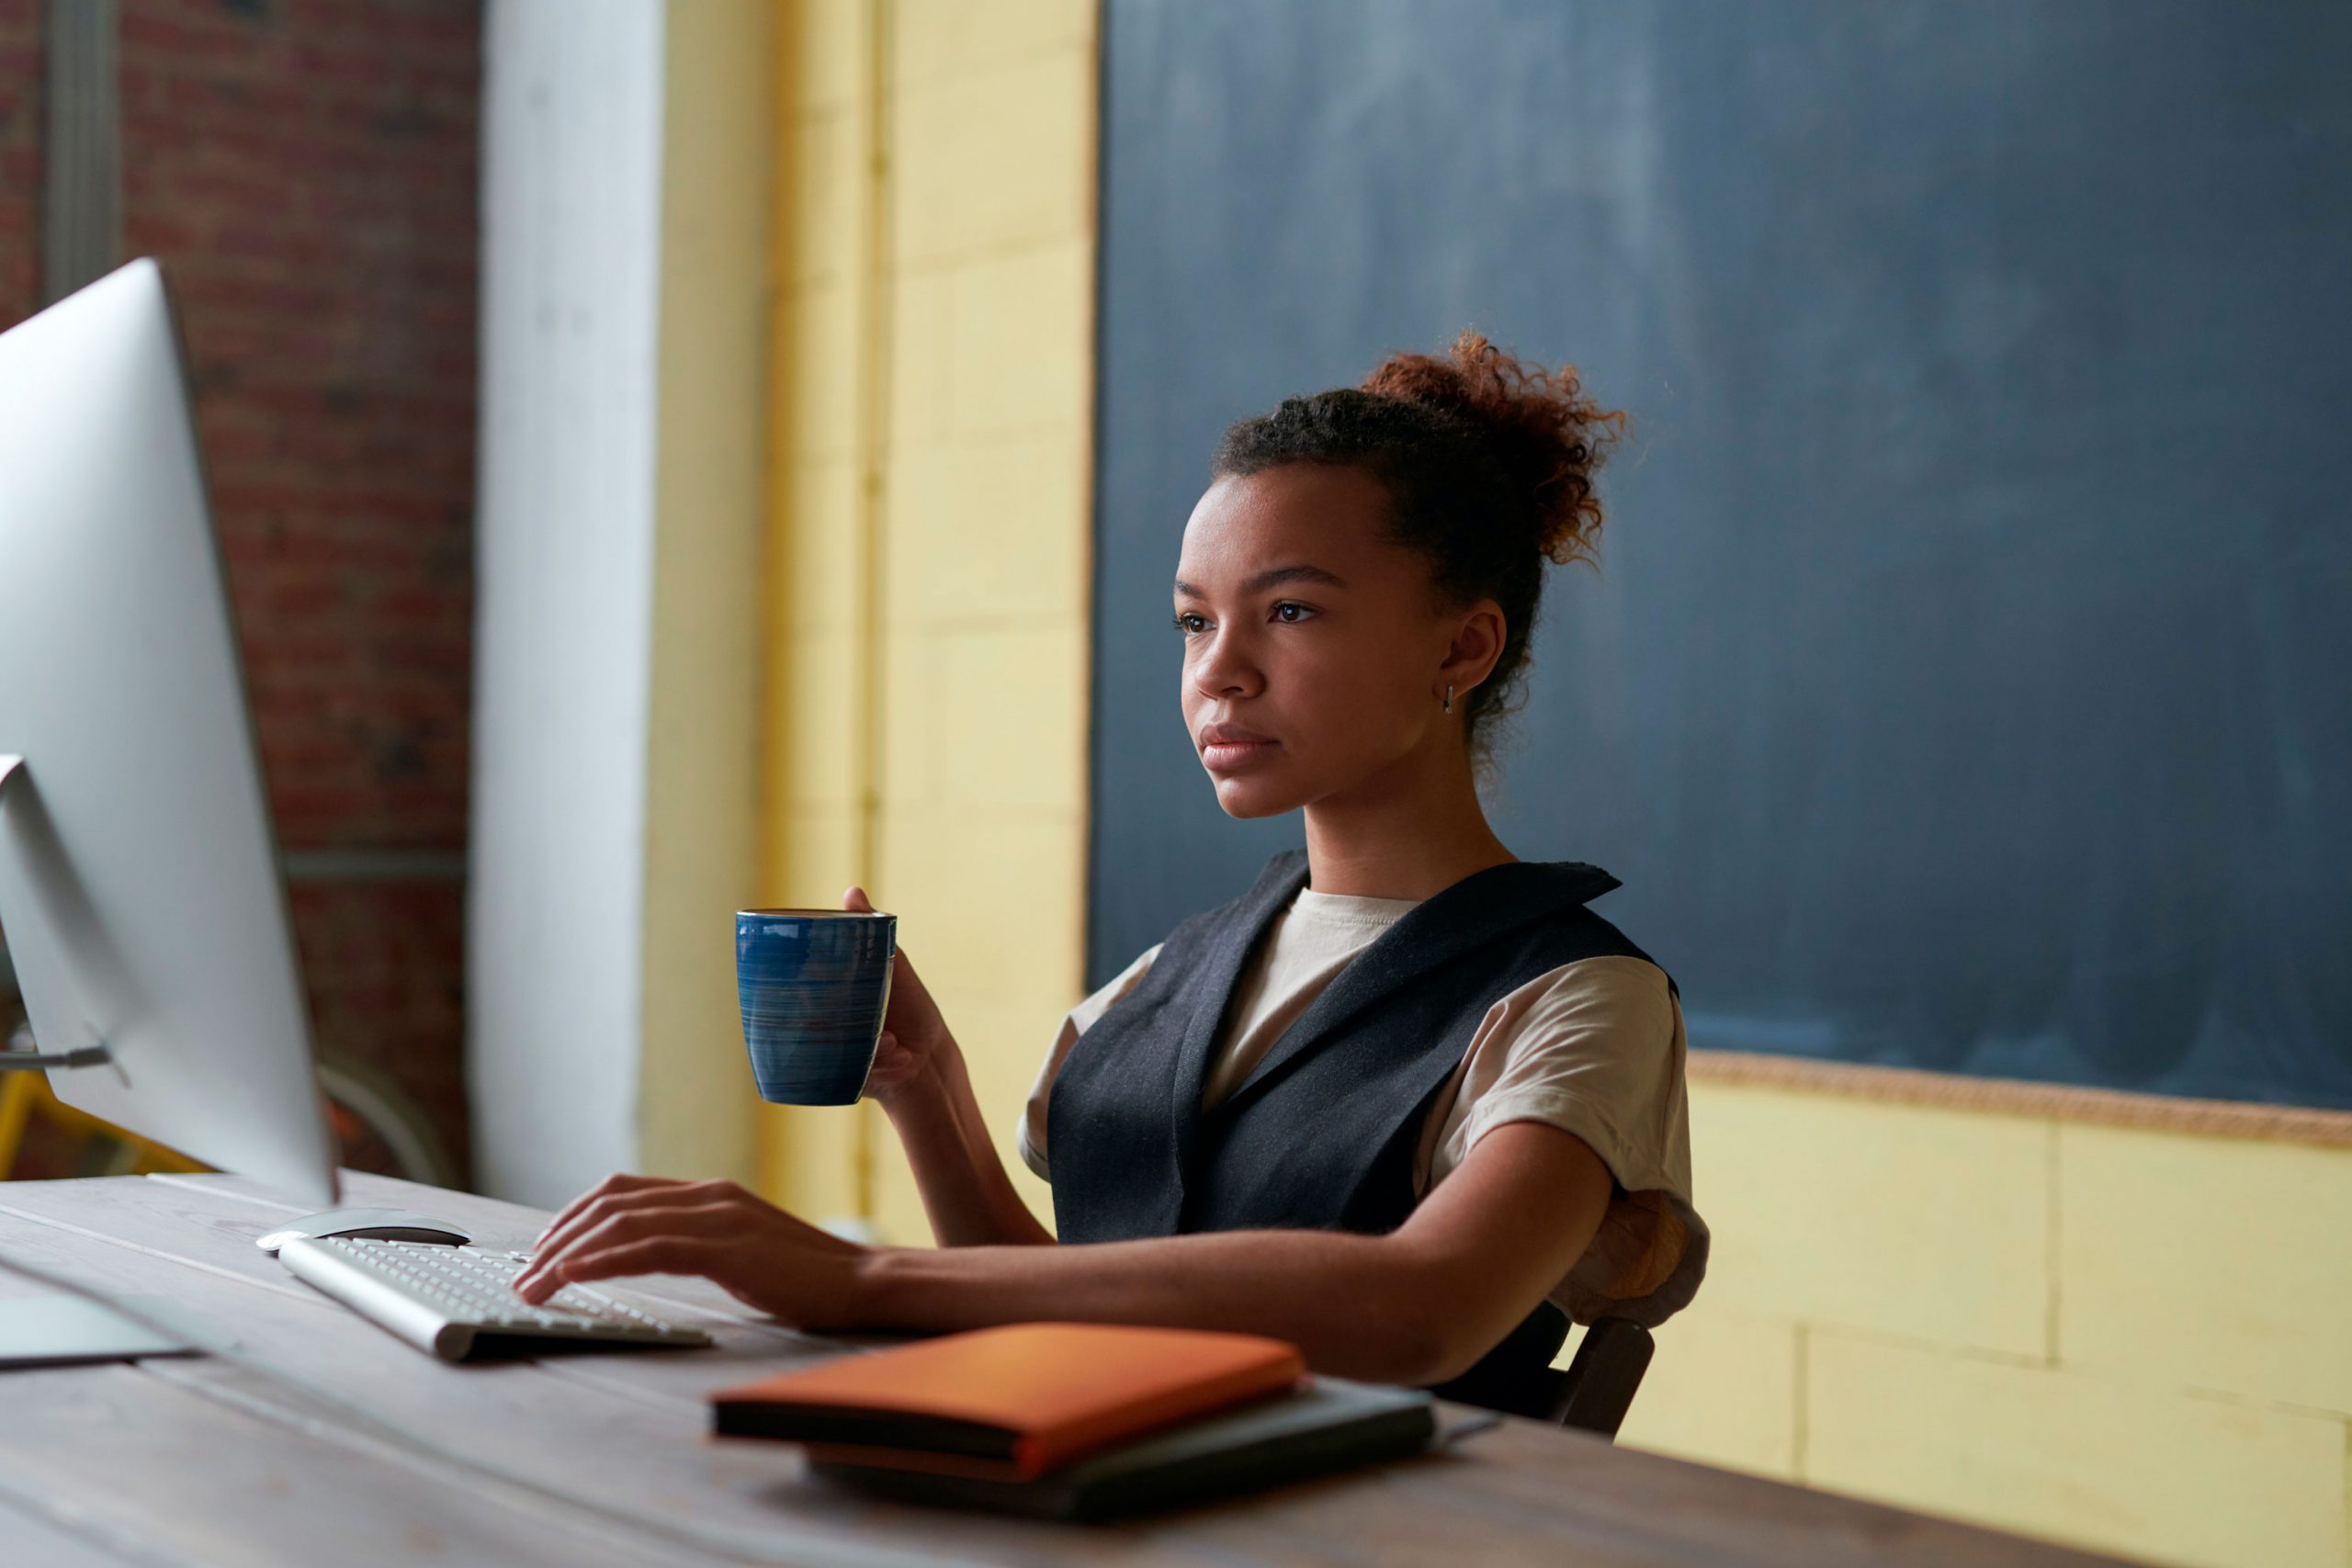 Uma mulher de pele negra, cabelos encaracolados presos em um coque, está sentada em frente a um computador, segurando uma xícara em uma mão e escrevendo no teclado com a outra. Sobre a mesa há diversos cadernos coloridos e atrás dela uma lousa